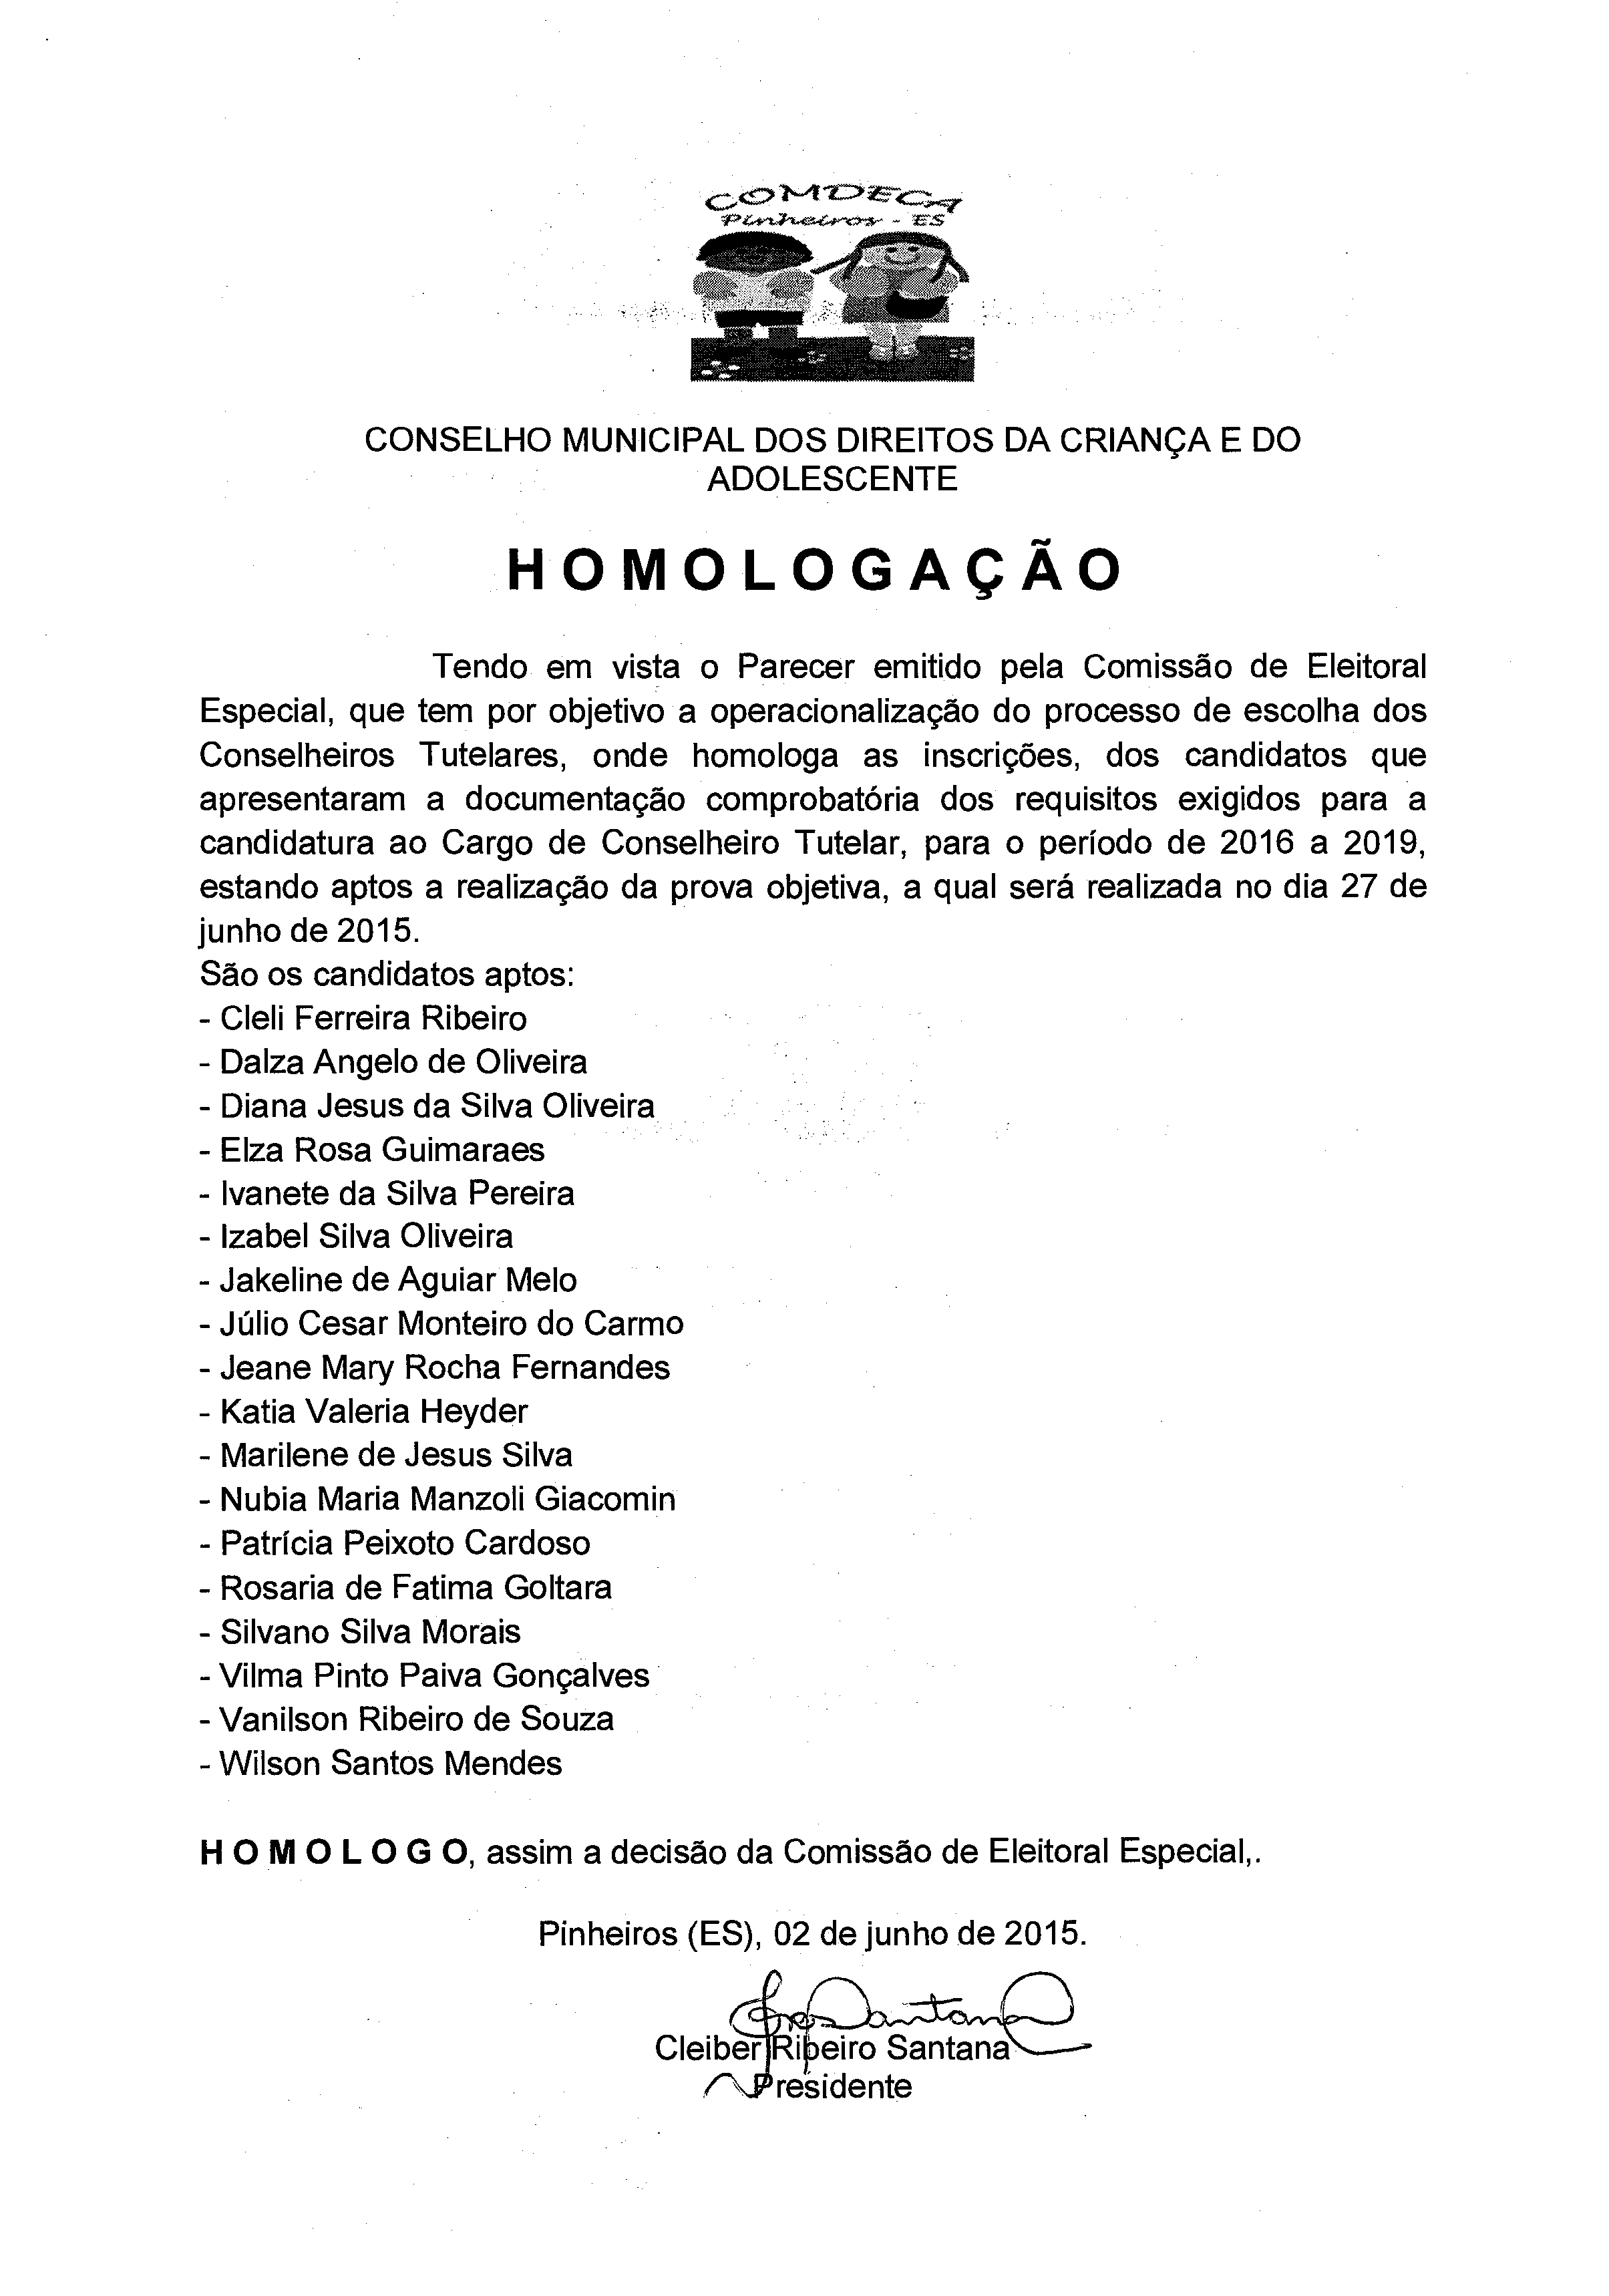 Candidatos inscritos para a eleição do Conselho Tutelar de Pinheiros